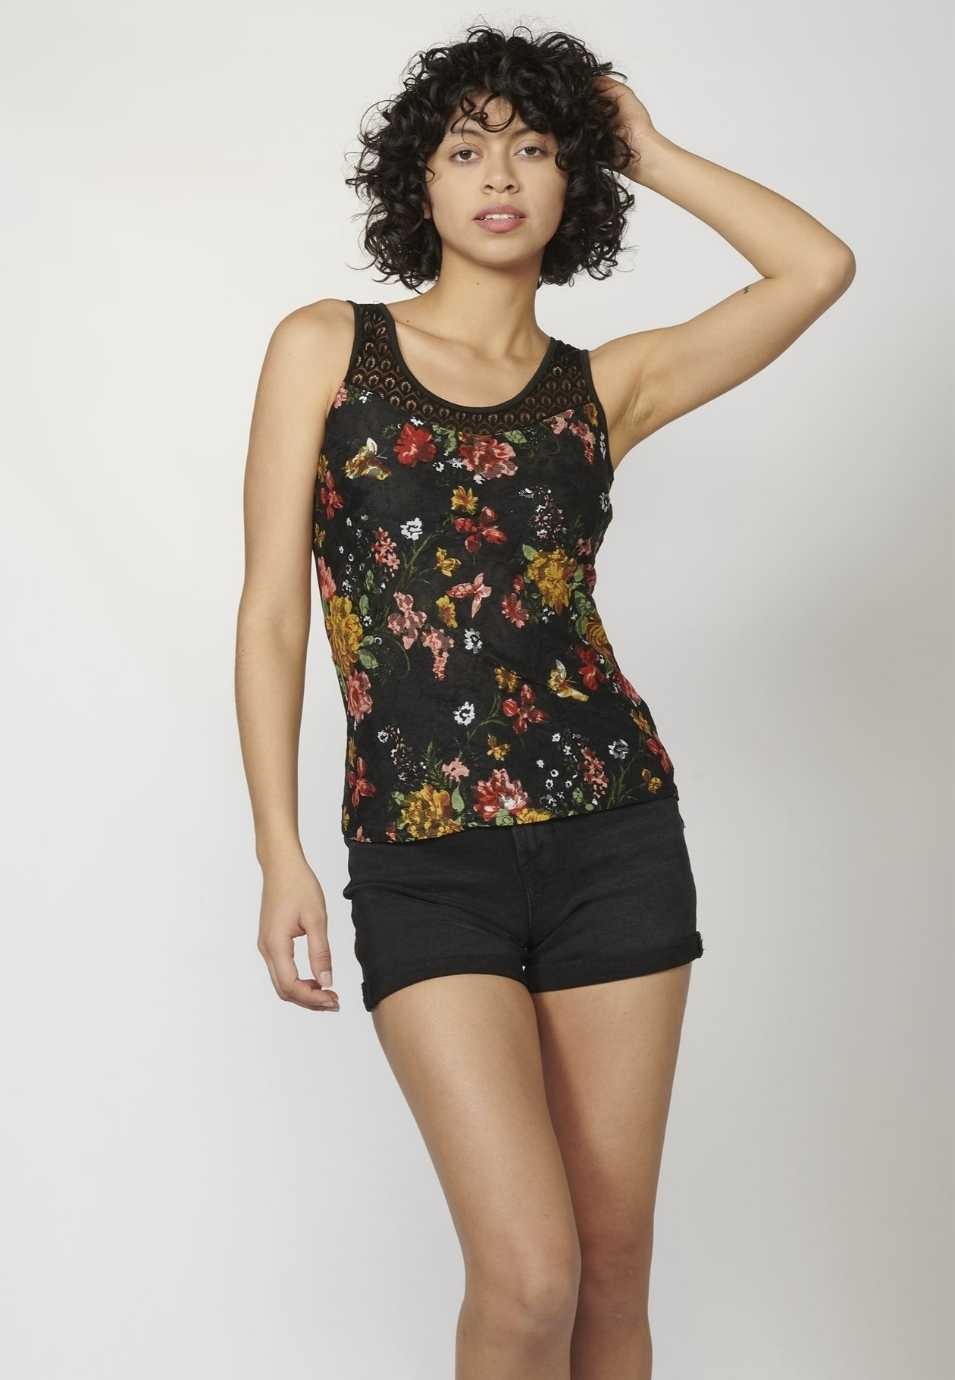 Camiseta Top tirantes con Escote Redondo y Estampado Floral para Mujer